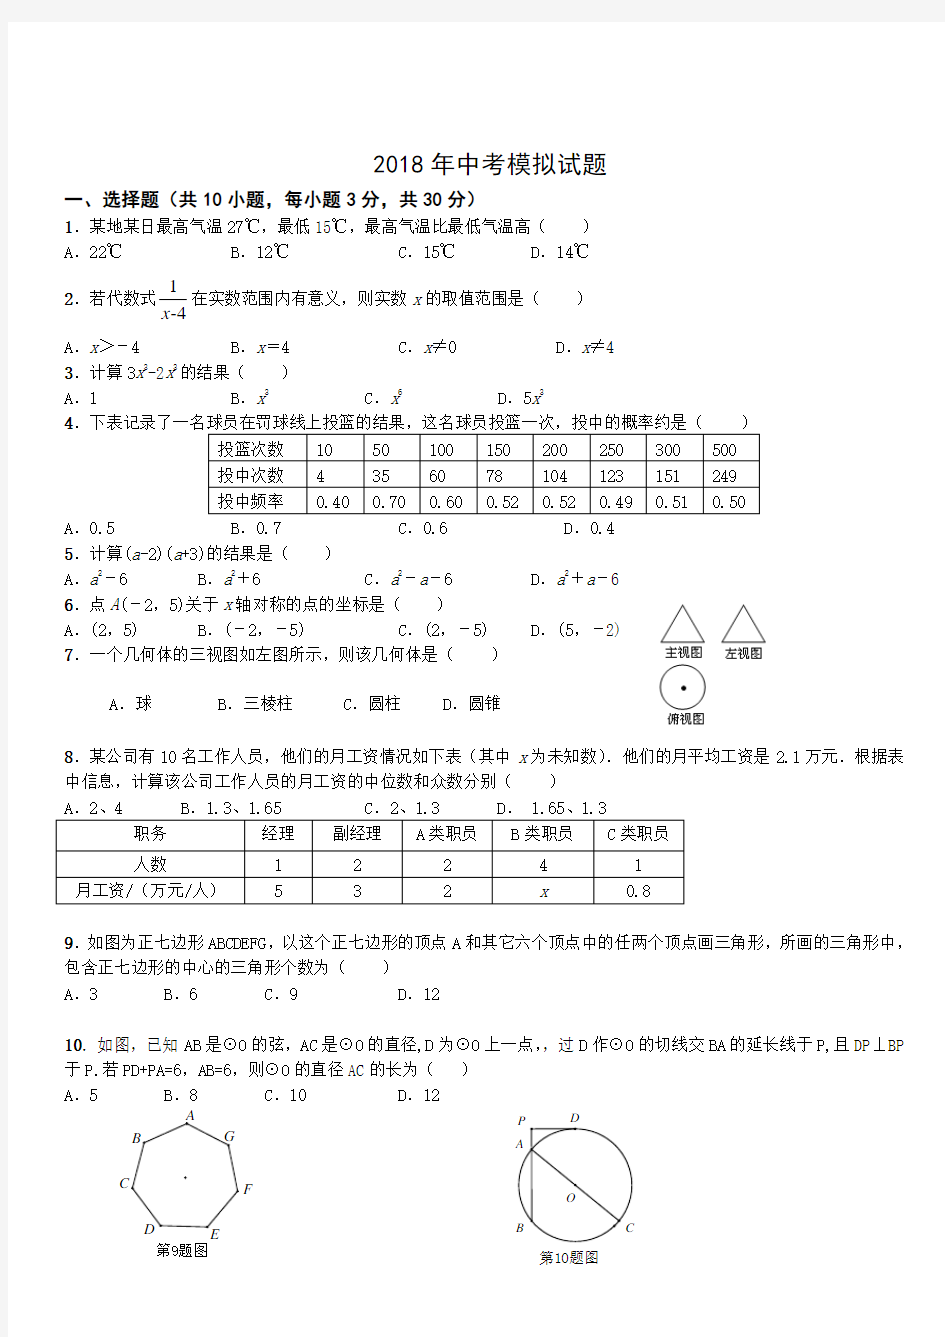 武汉市2018年中考数学模拟试题(有答案)